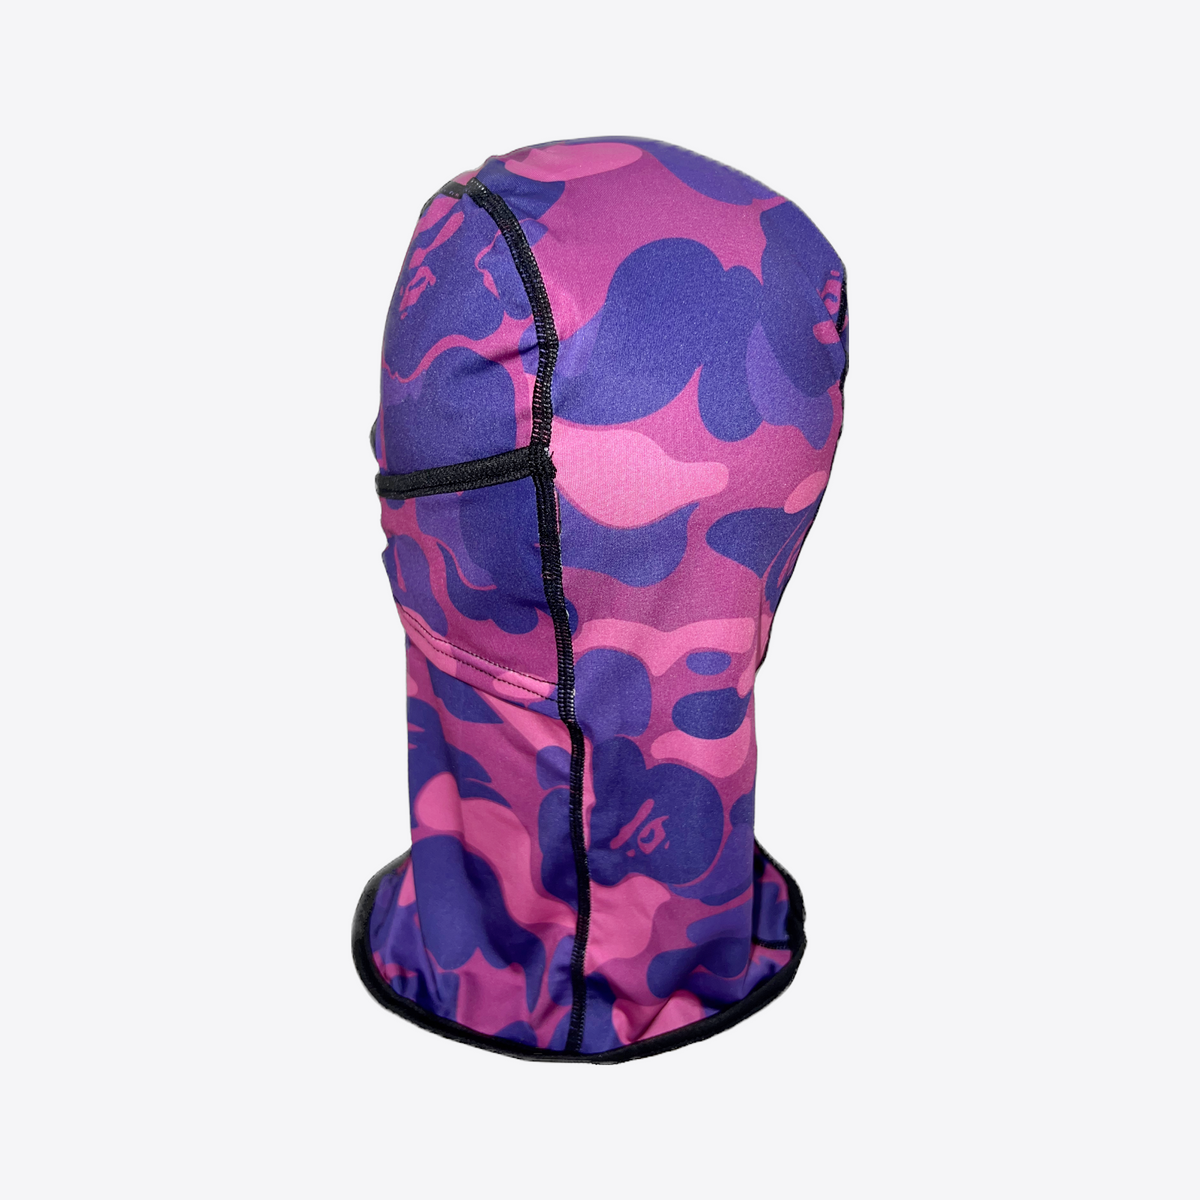 Bape Purple Camo Shiesty Mask Balaclava